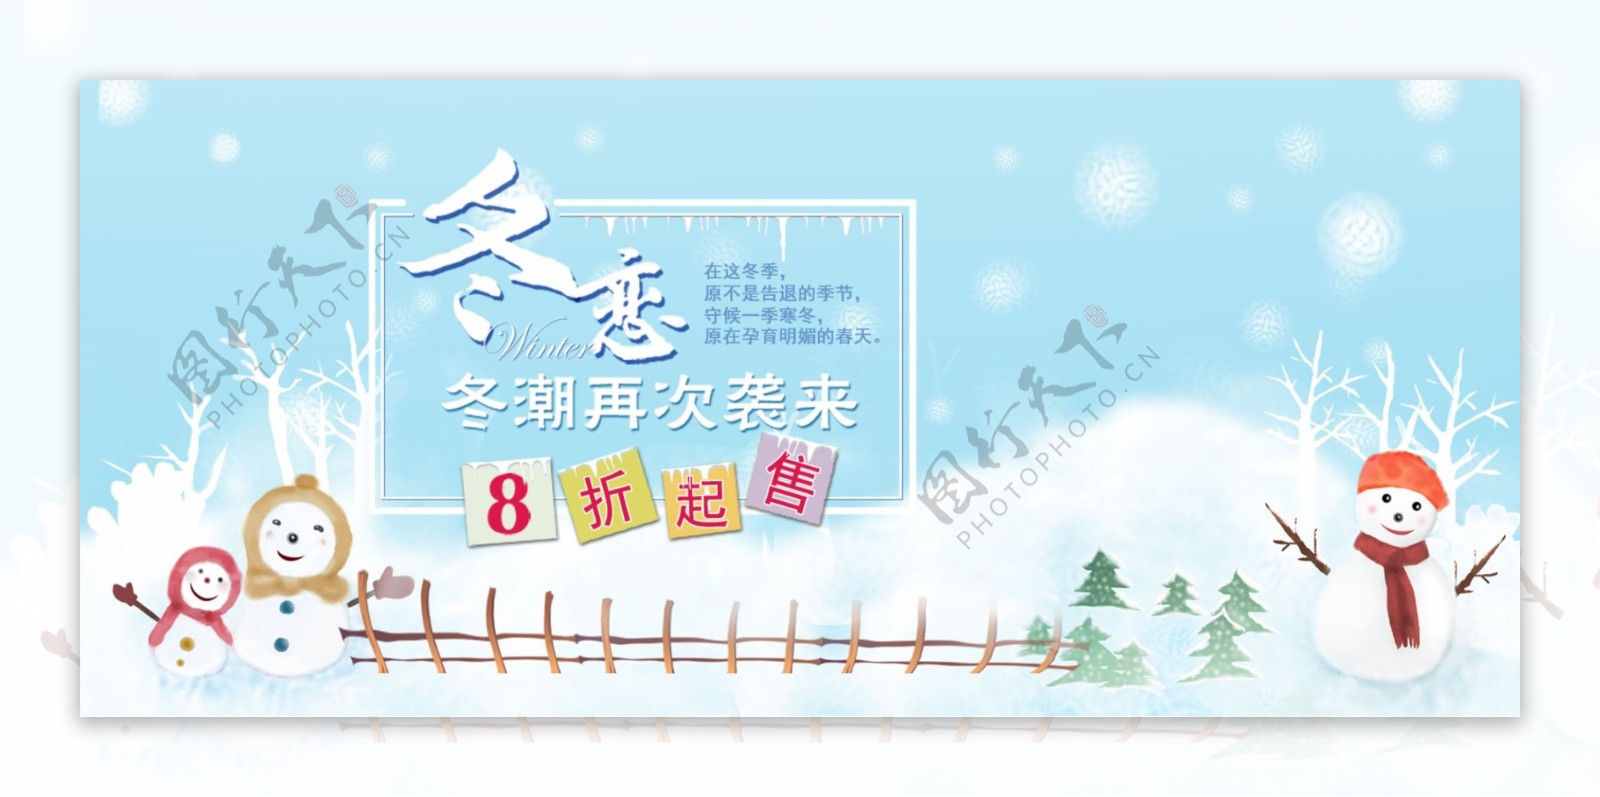 蓝色清新雪花背景冬季上新促销电商海报